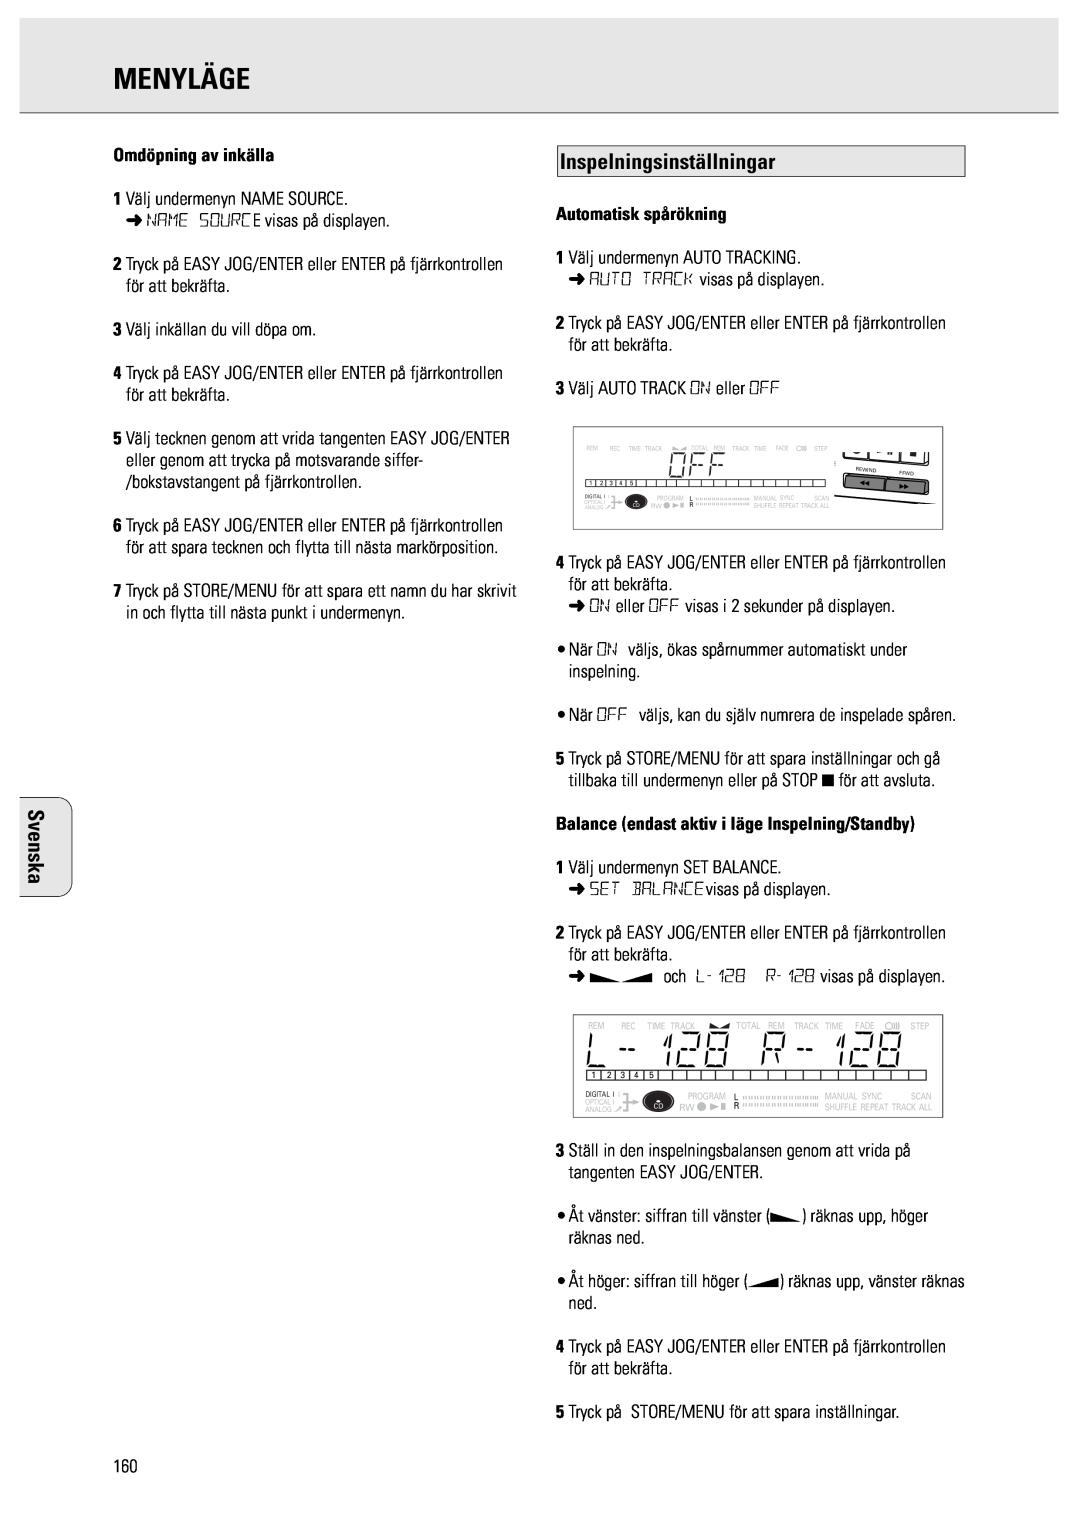 Philips CDR950/951 manual Inspelningsinställningar, Omdöpning av inkälla, Automatisk spårökning, Menyläge, Svenska 